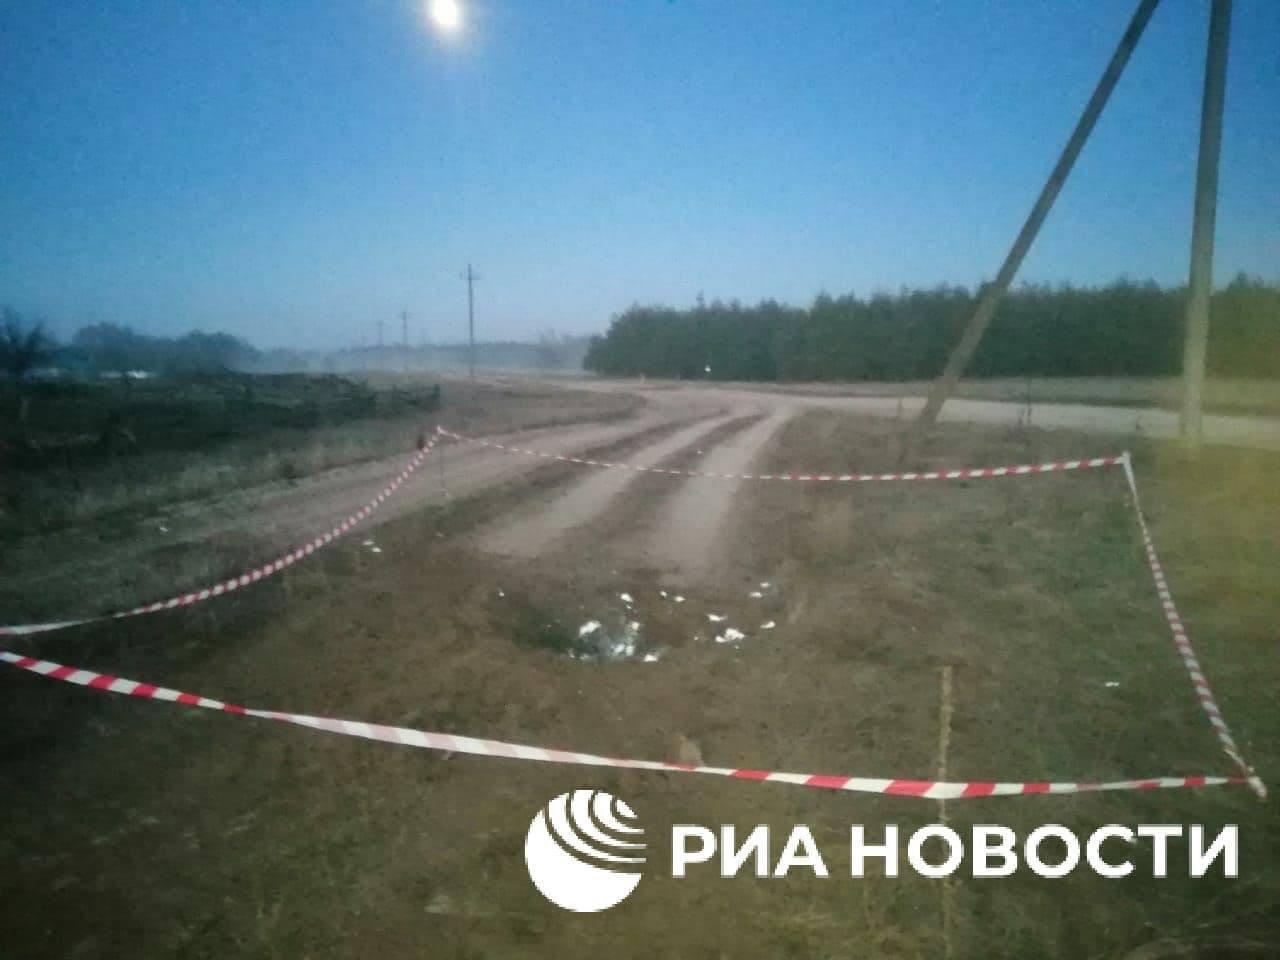 ​Новость о падении “украинского снаряда” на Ростовскую область оказалось копией фейка 2014 года